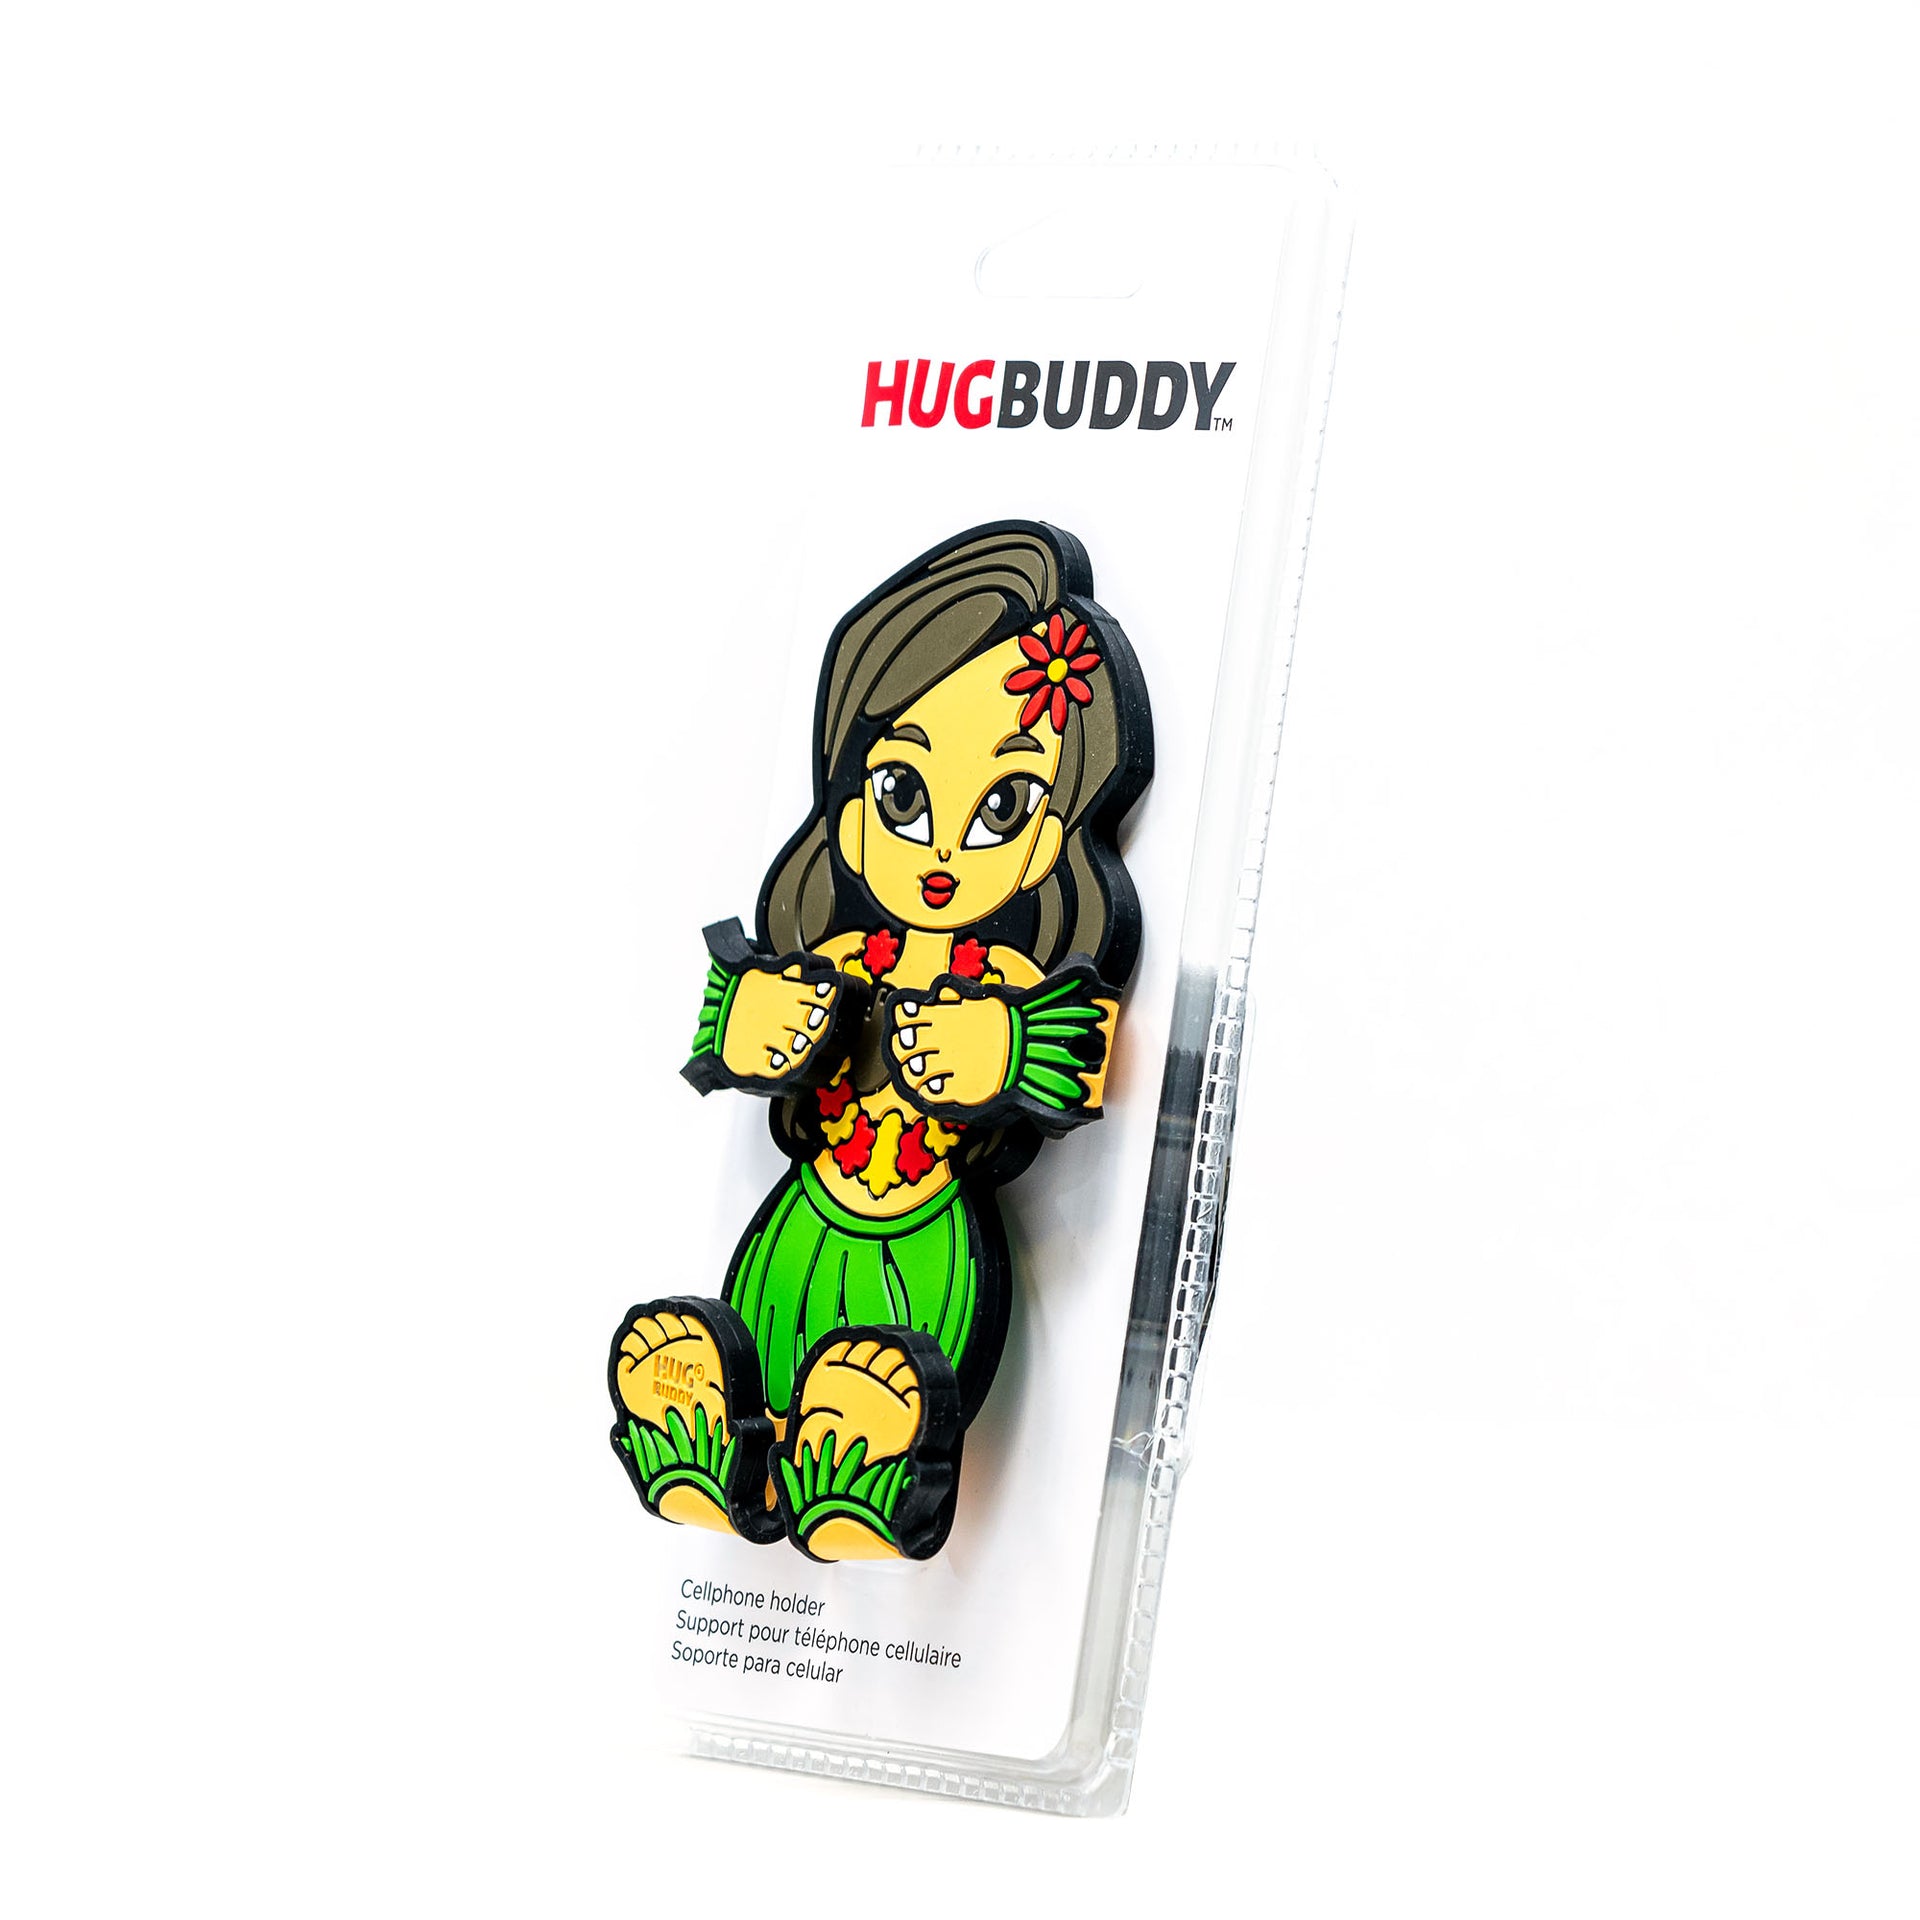 Image of Hula Girl Hug Buddy packaging 45 degree angle view